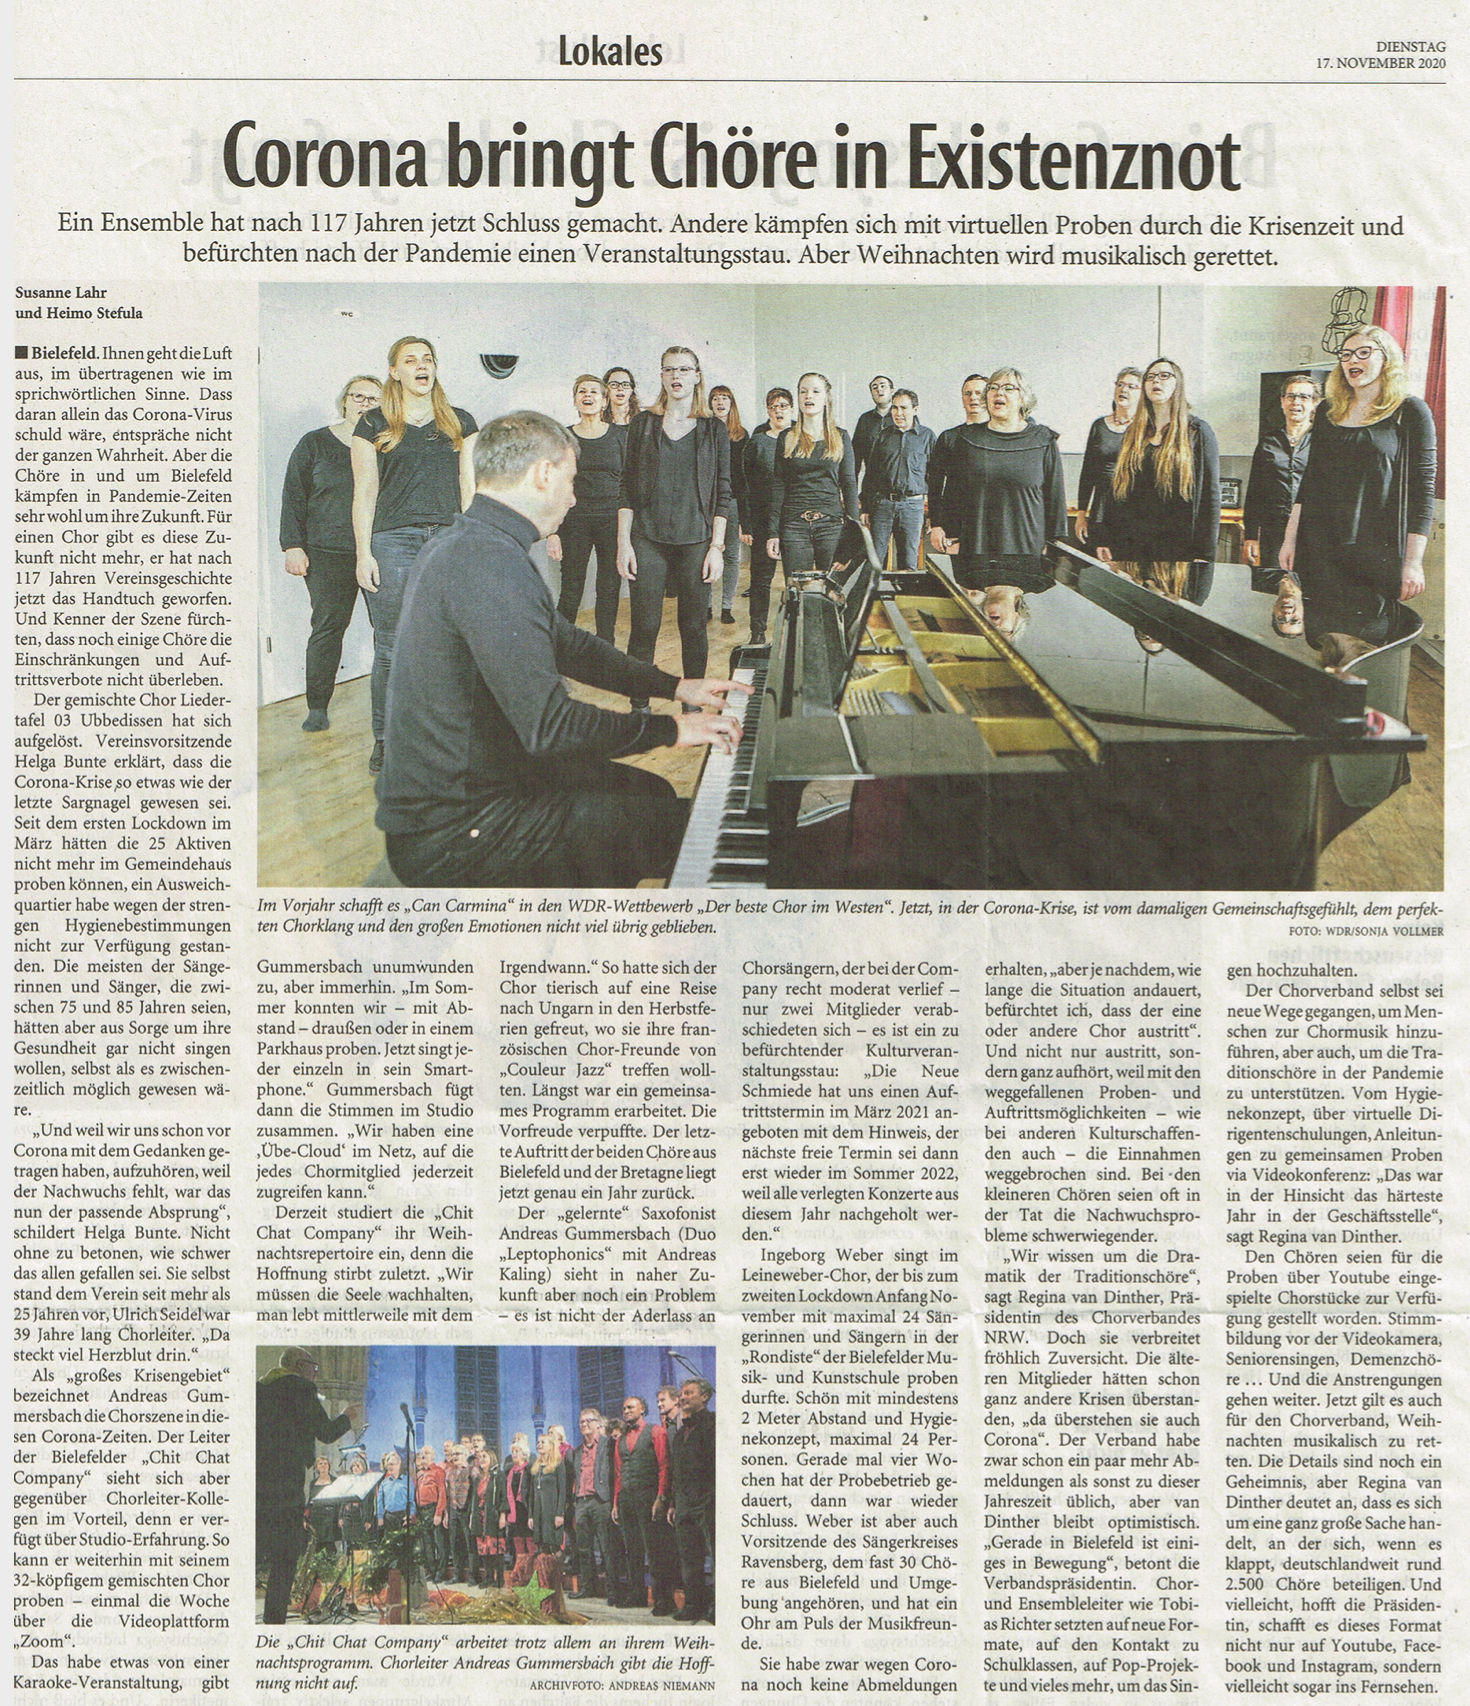 Rückspiel mit Couleur Jazz in der Neuen Schmiede am 18.04.2015